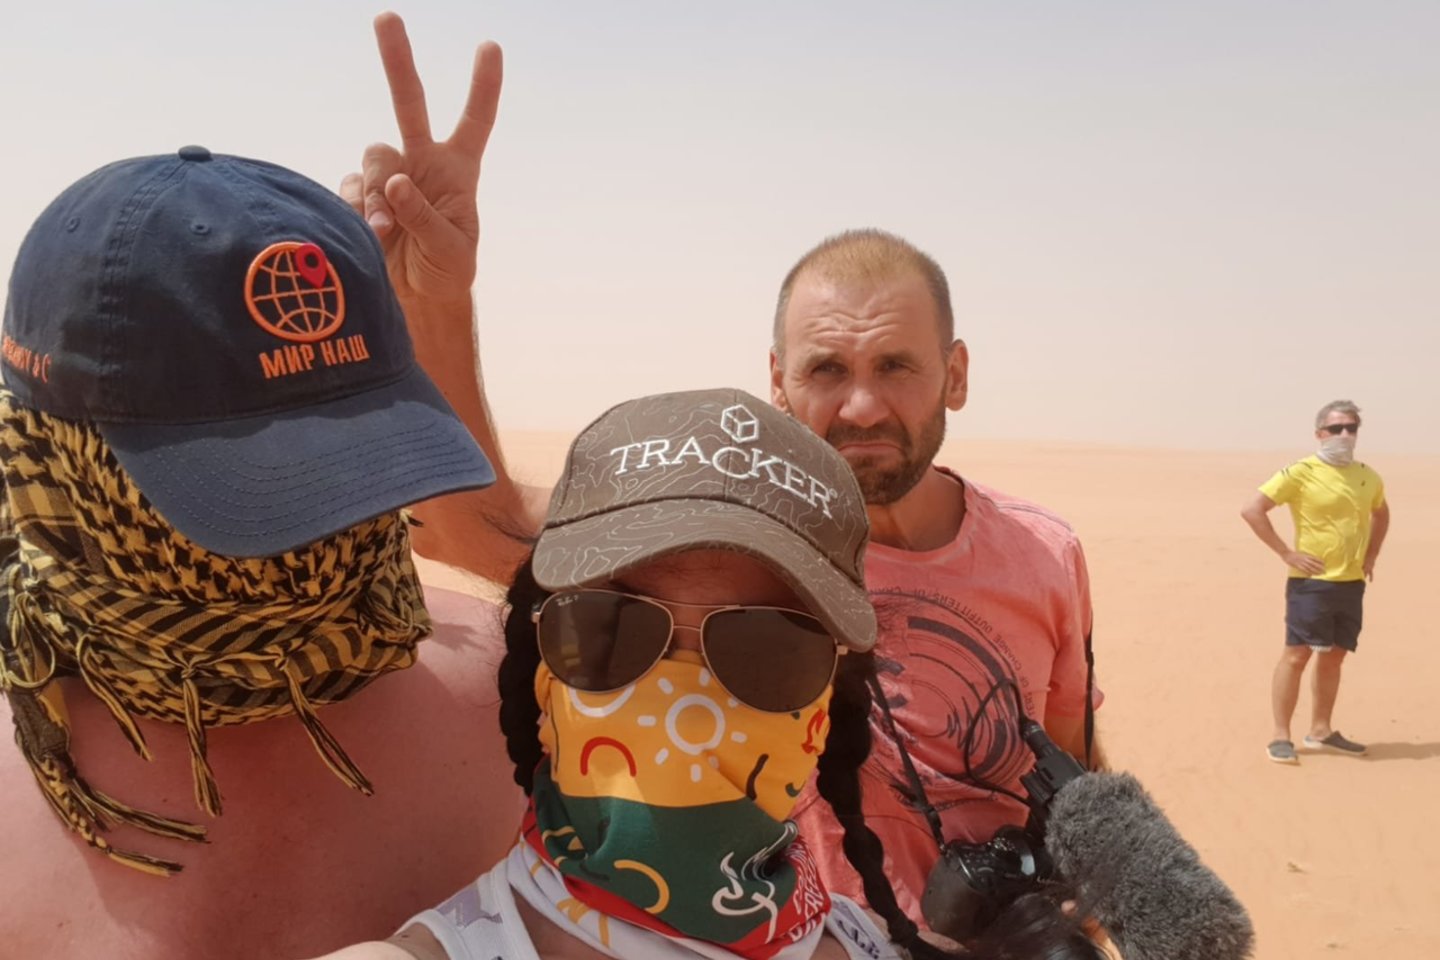 Kaunietė verslininkė po Čadą keliavo su Rusijos ekspedicijos „Pasaulis mūsų“ komanda – M.Dubckienė ten buvo vienintelė ES pilietė.<br>Asmeninio albumo nuotr.